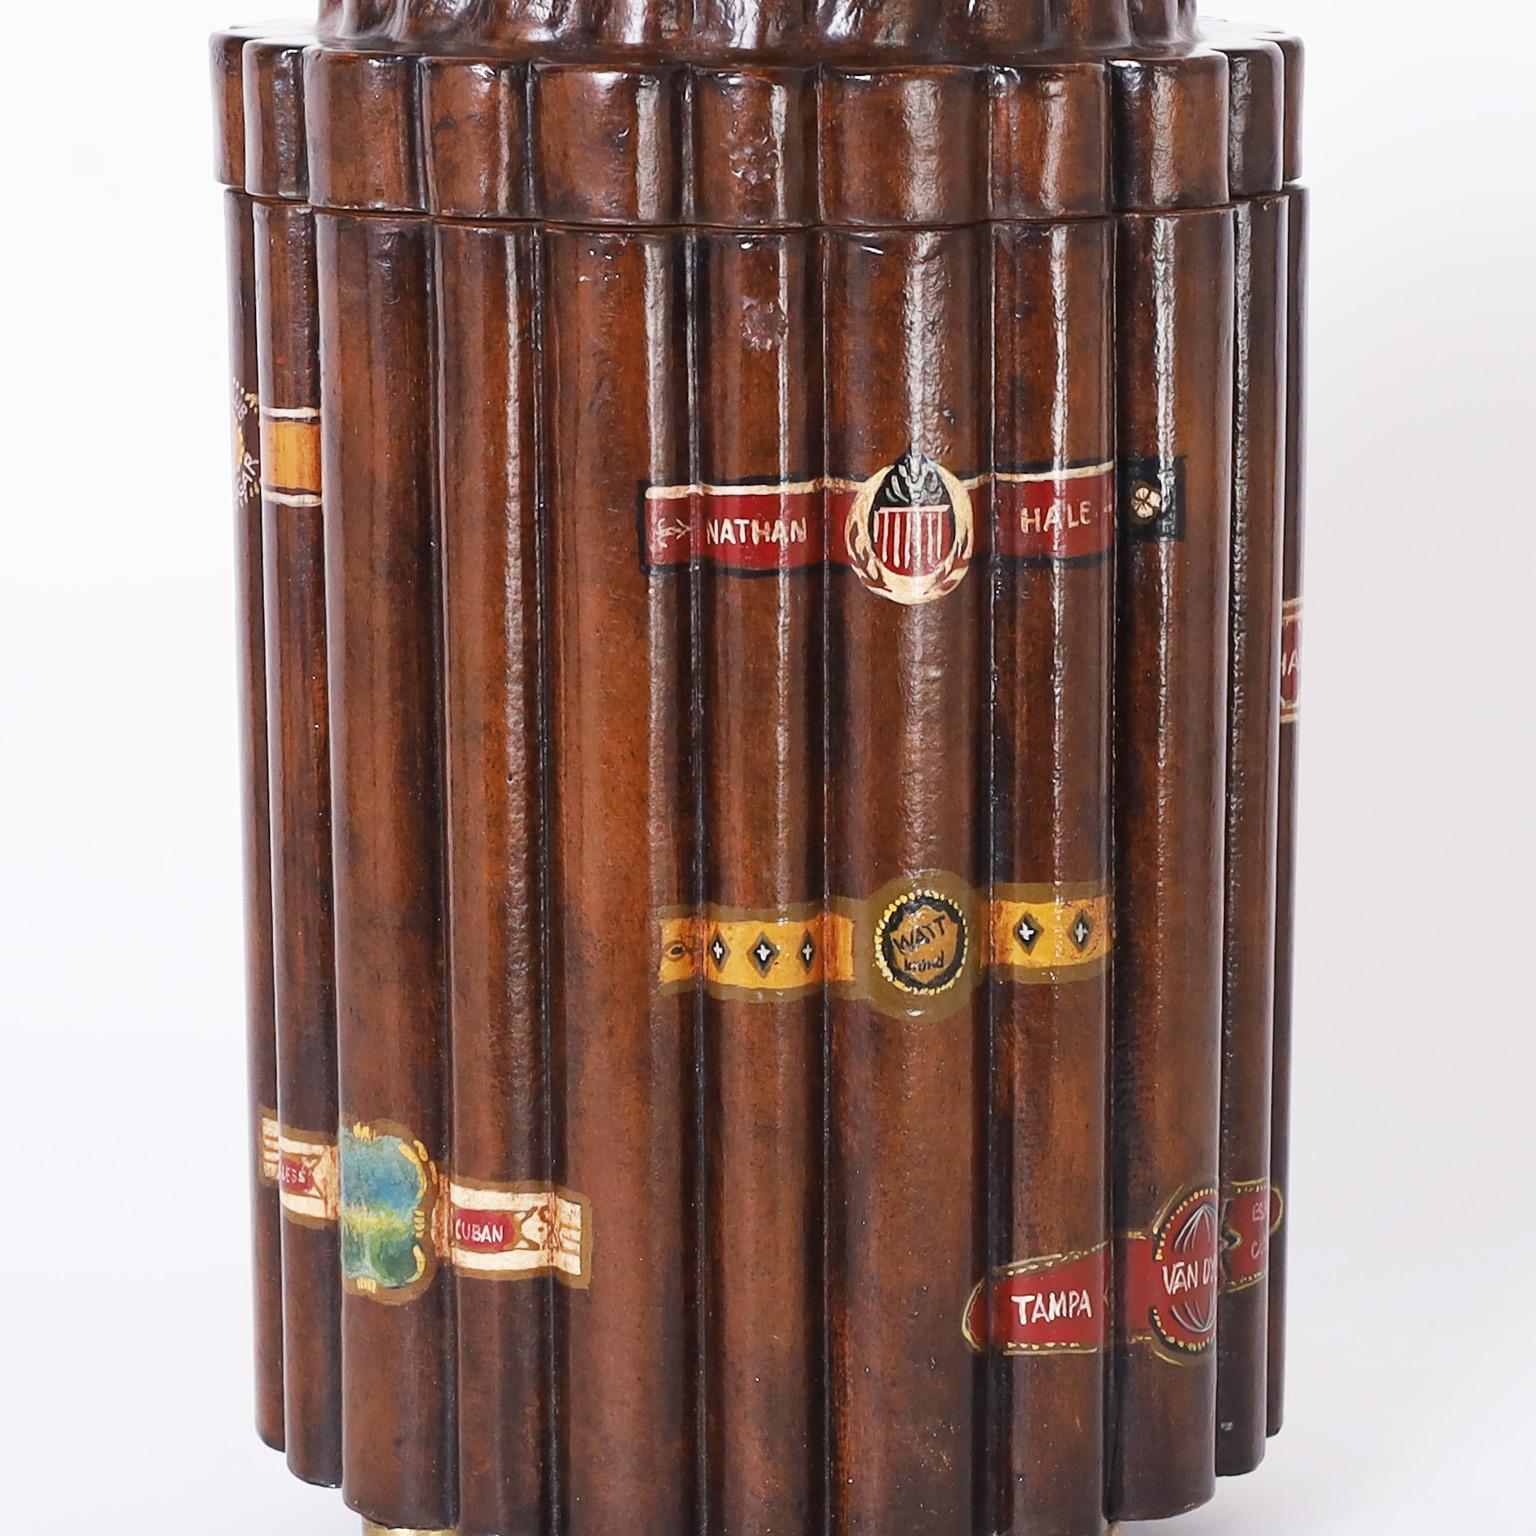 British Colonial Cigar Box or Humidor